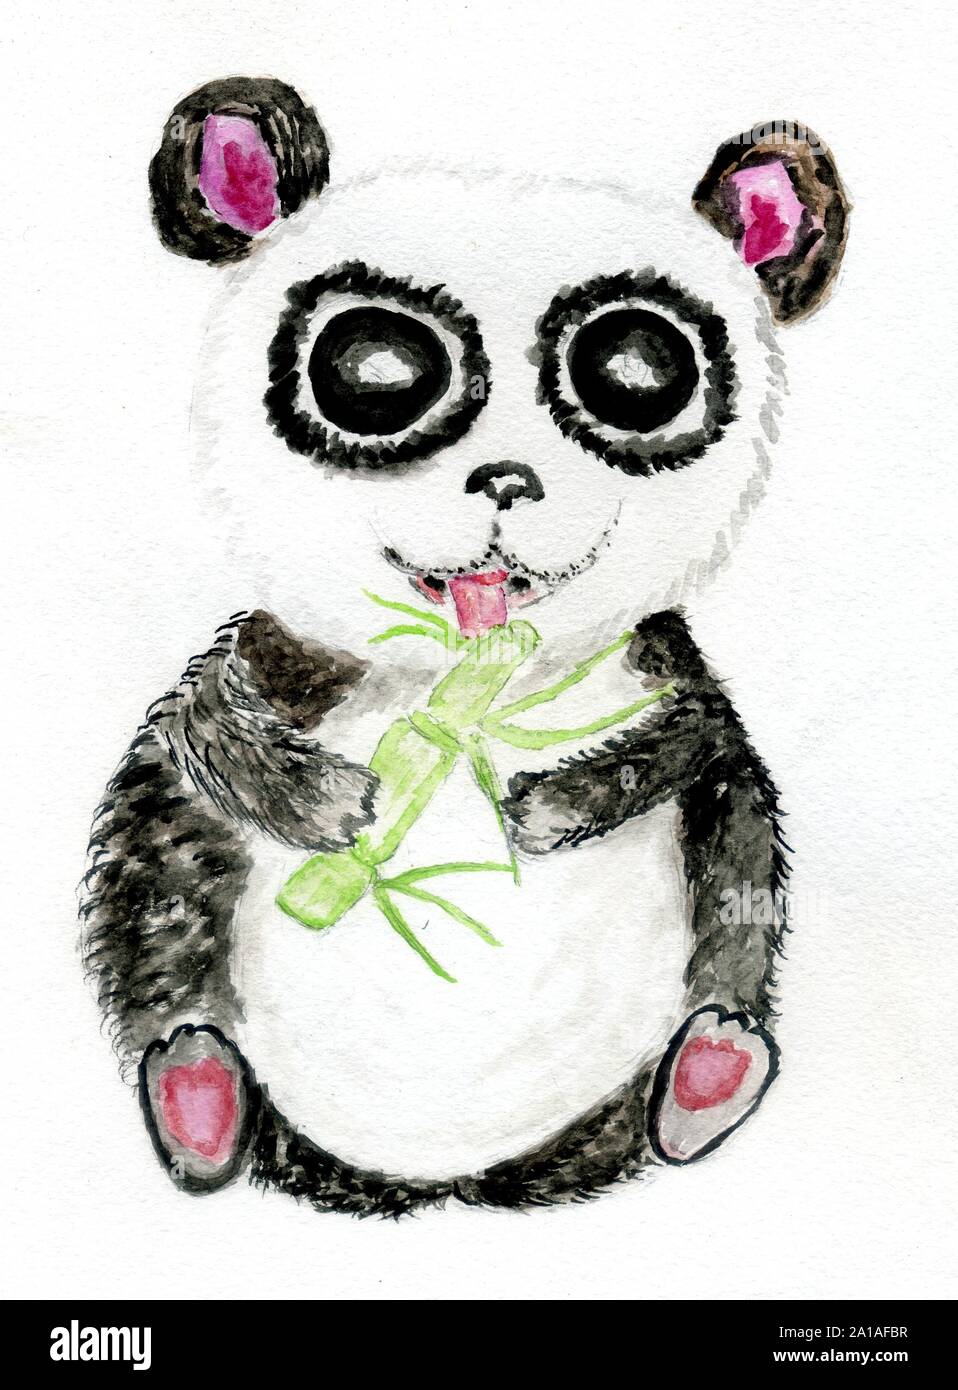 Panda painting Vectors  Illustrations for Free Download  Freepik